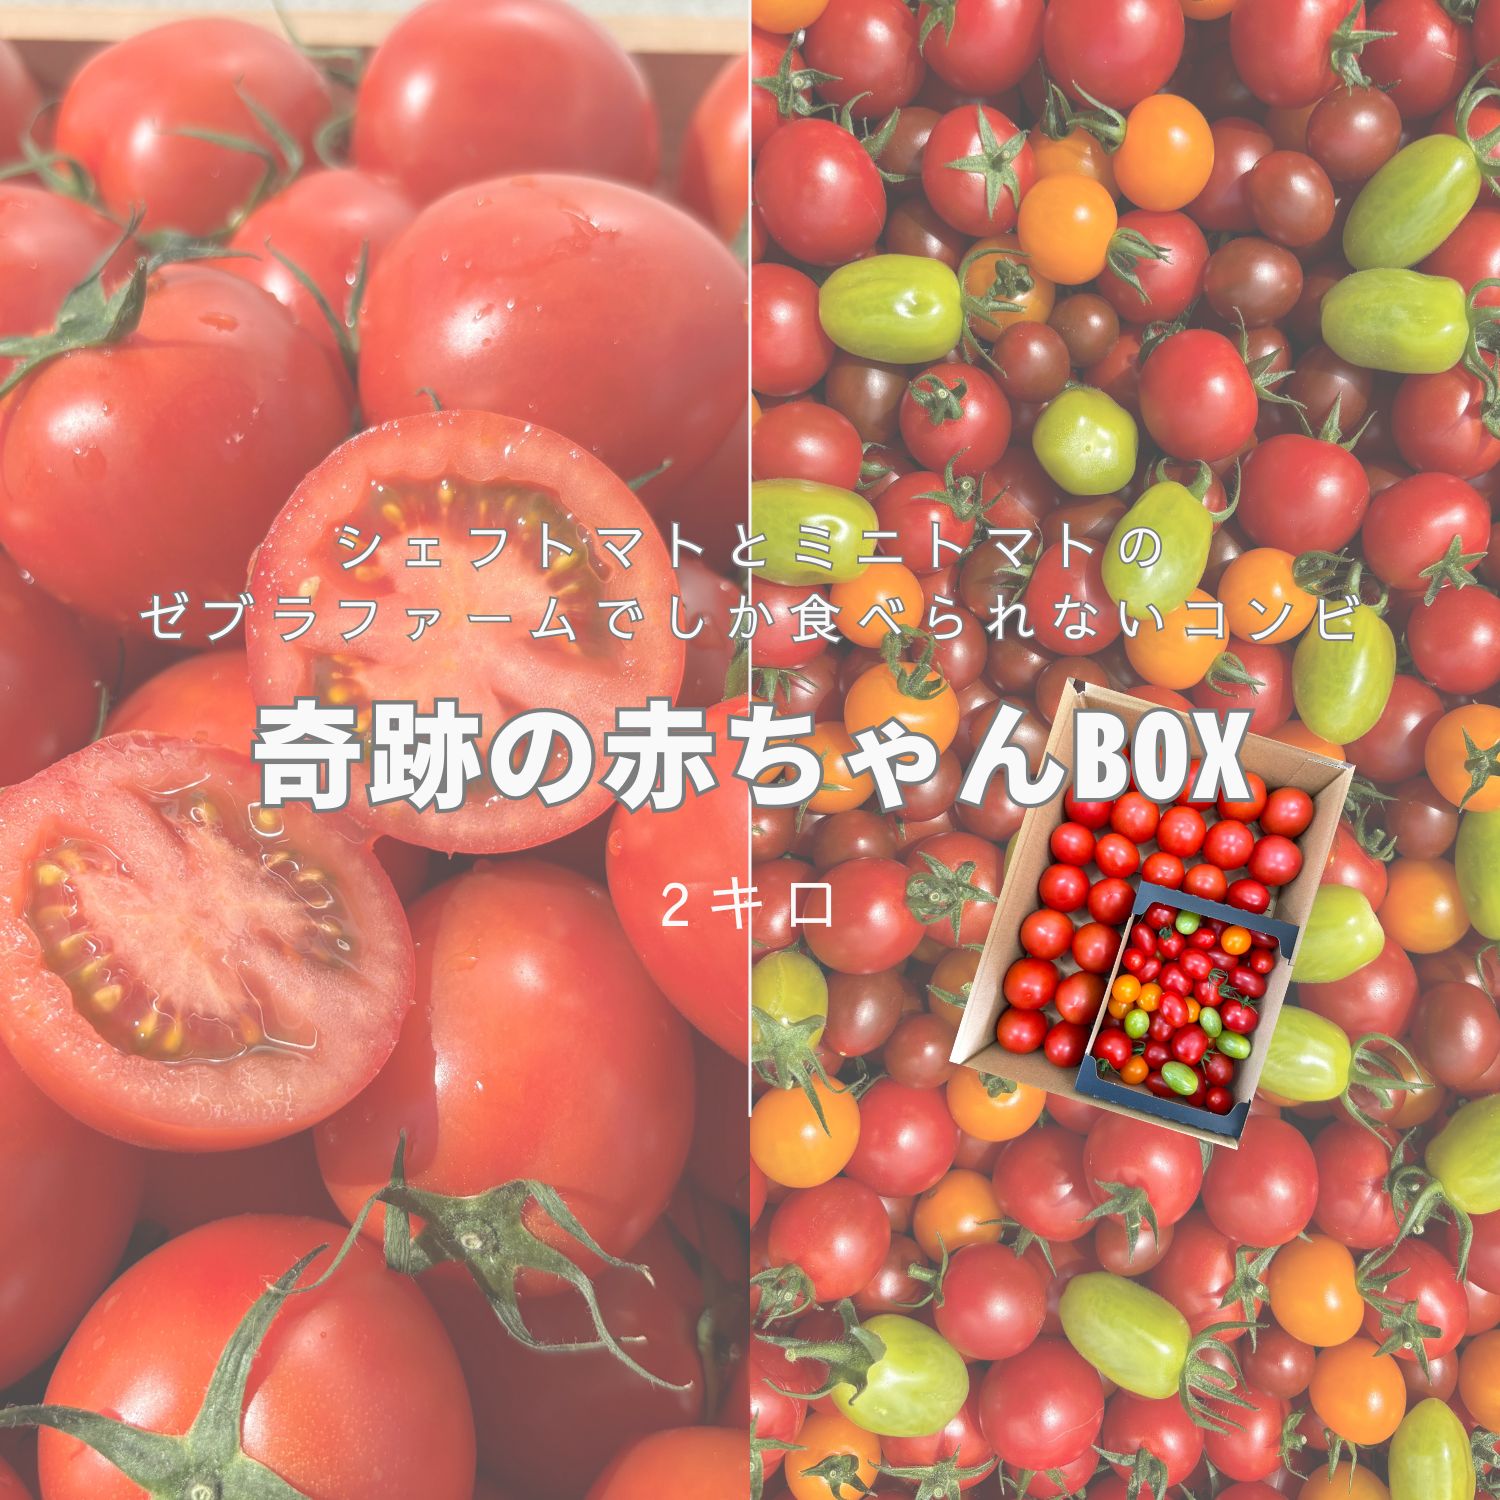 奇跡の赤ちゃんBOX(2kg箱) ミニトマト トマト カラフル 新鮮 健康 ギフト トマトソース トマトジュース プレセント リコピン